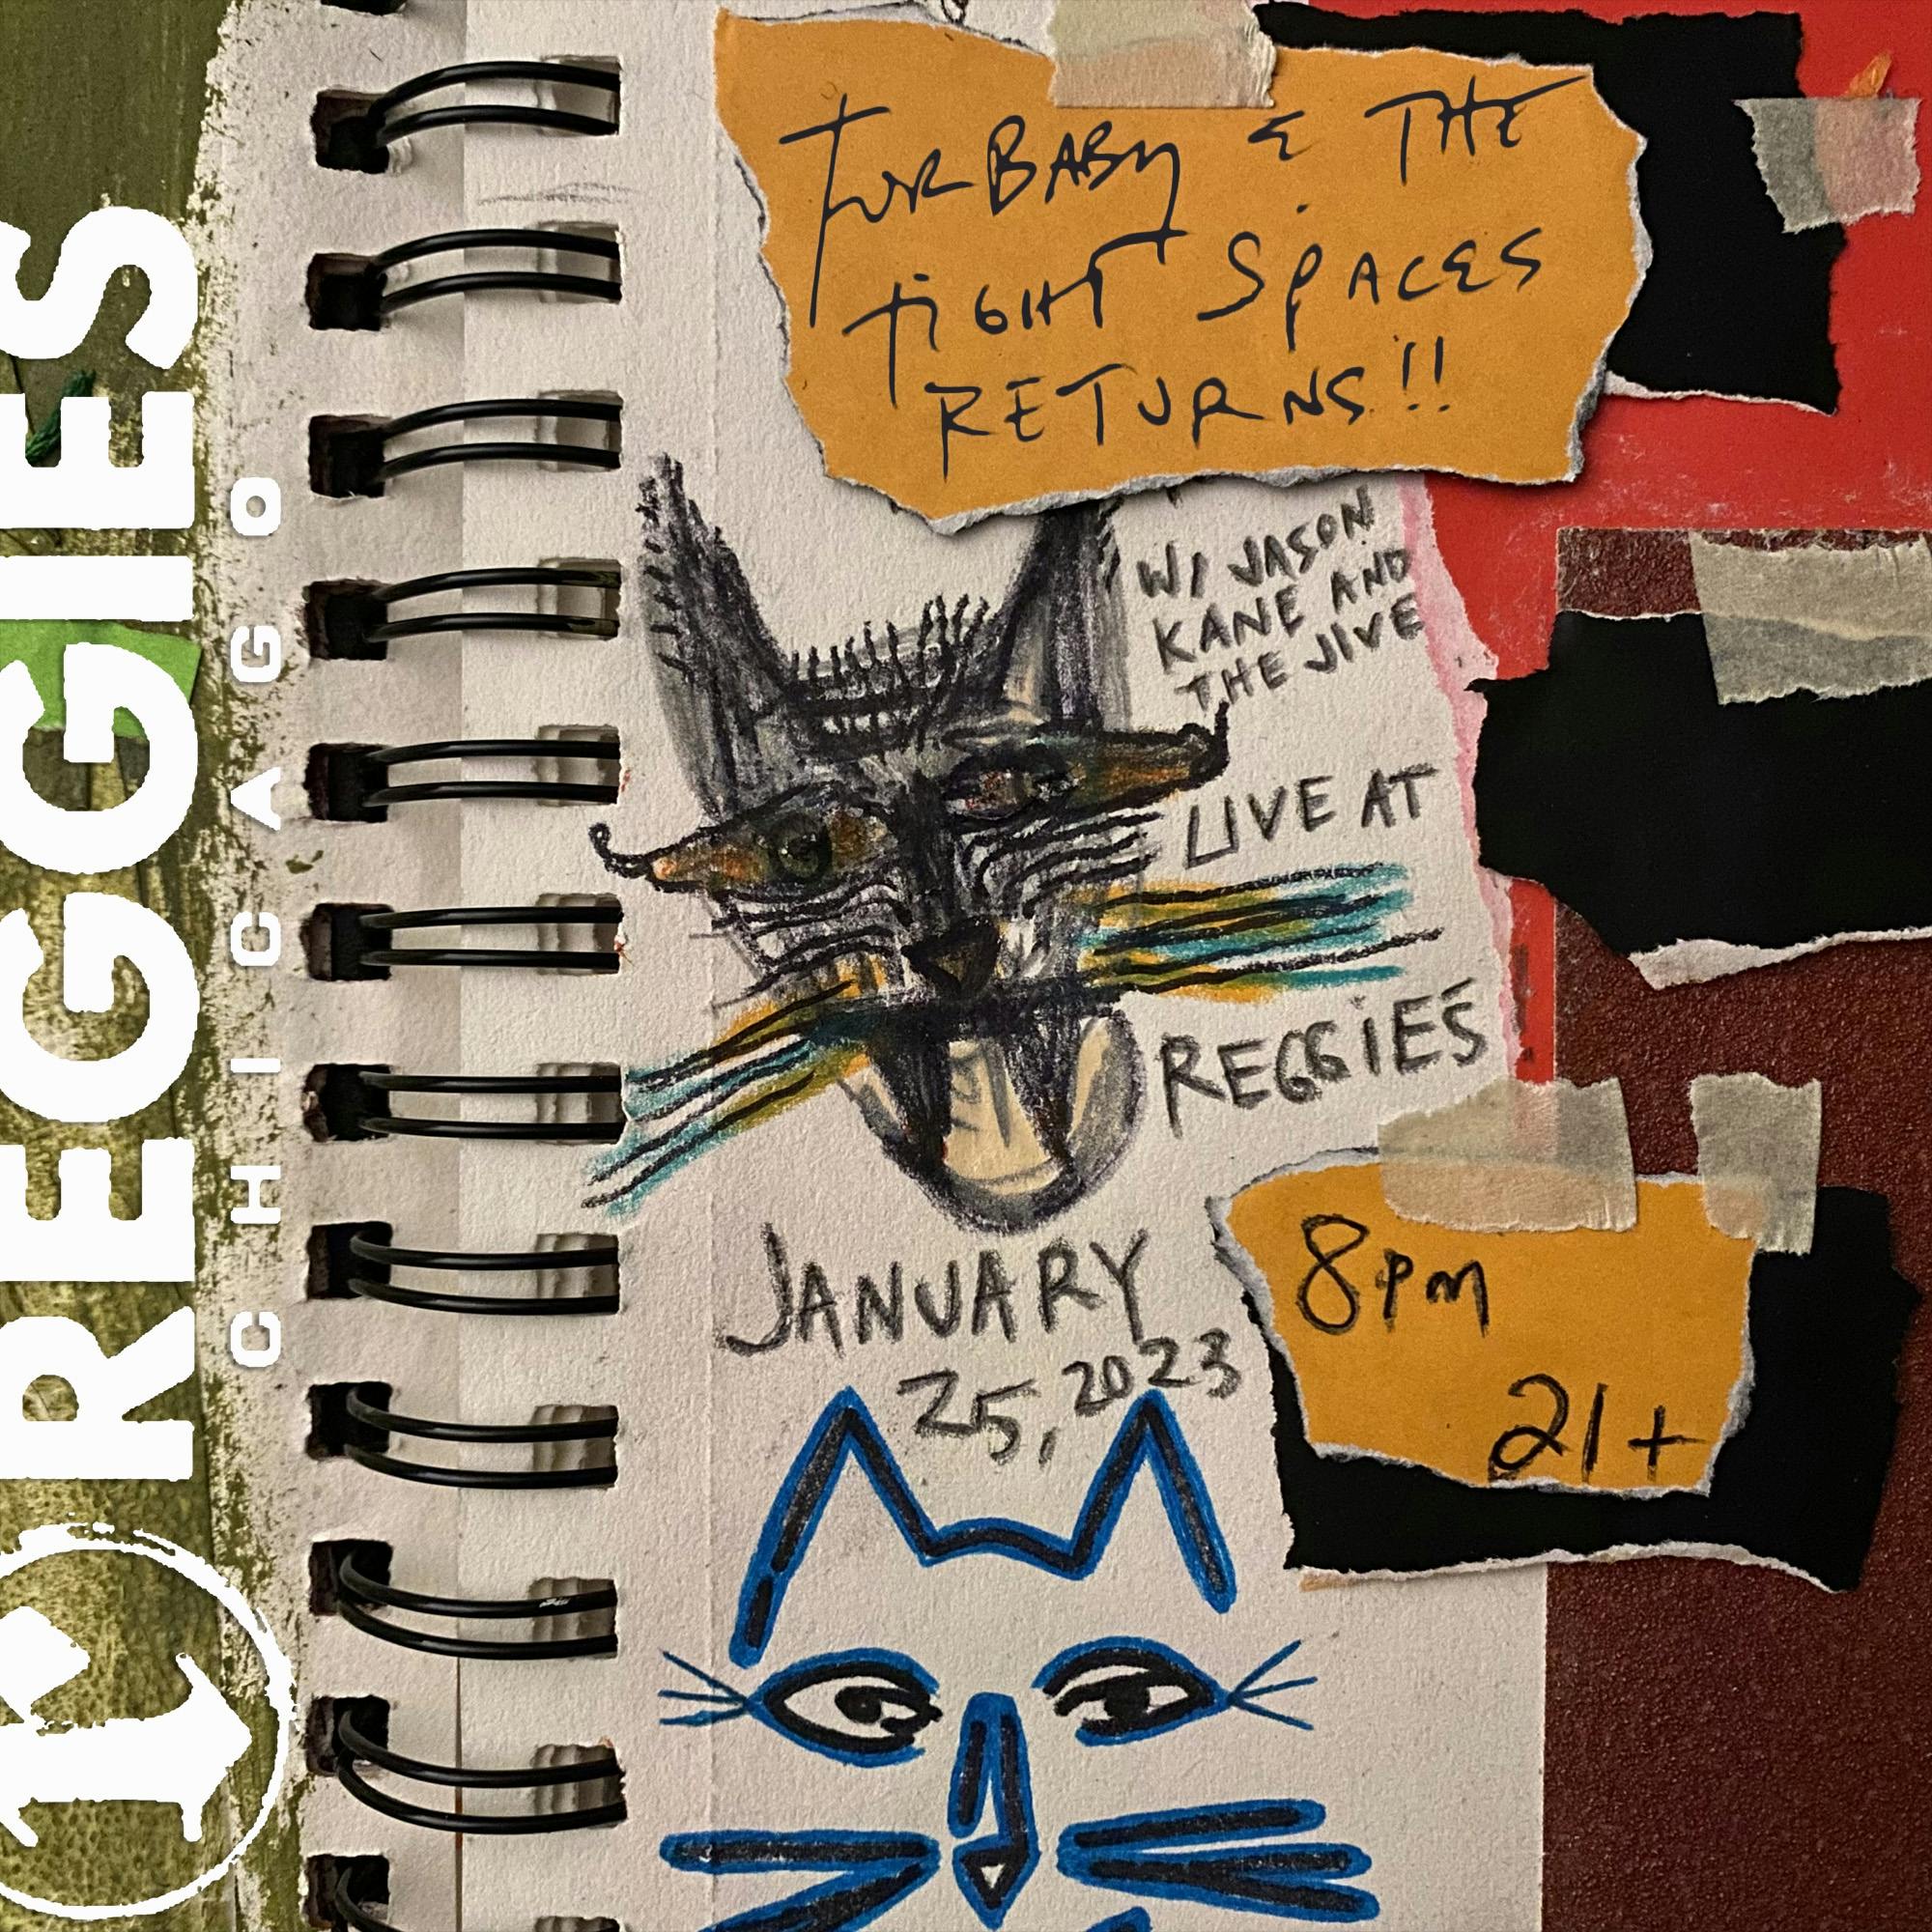 January 25 at Reggies